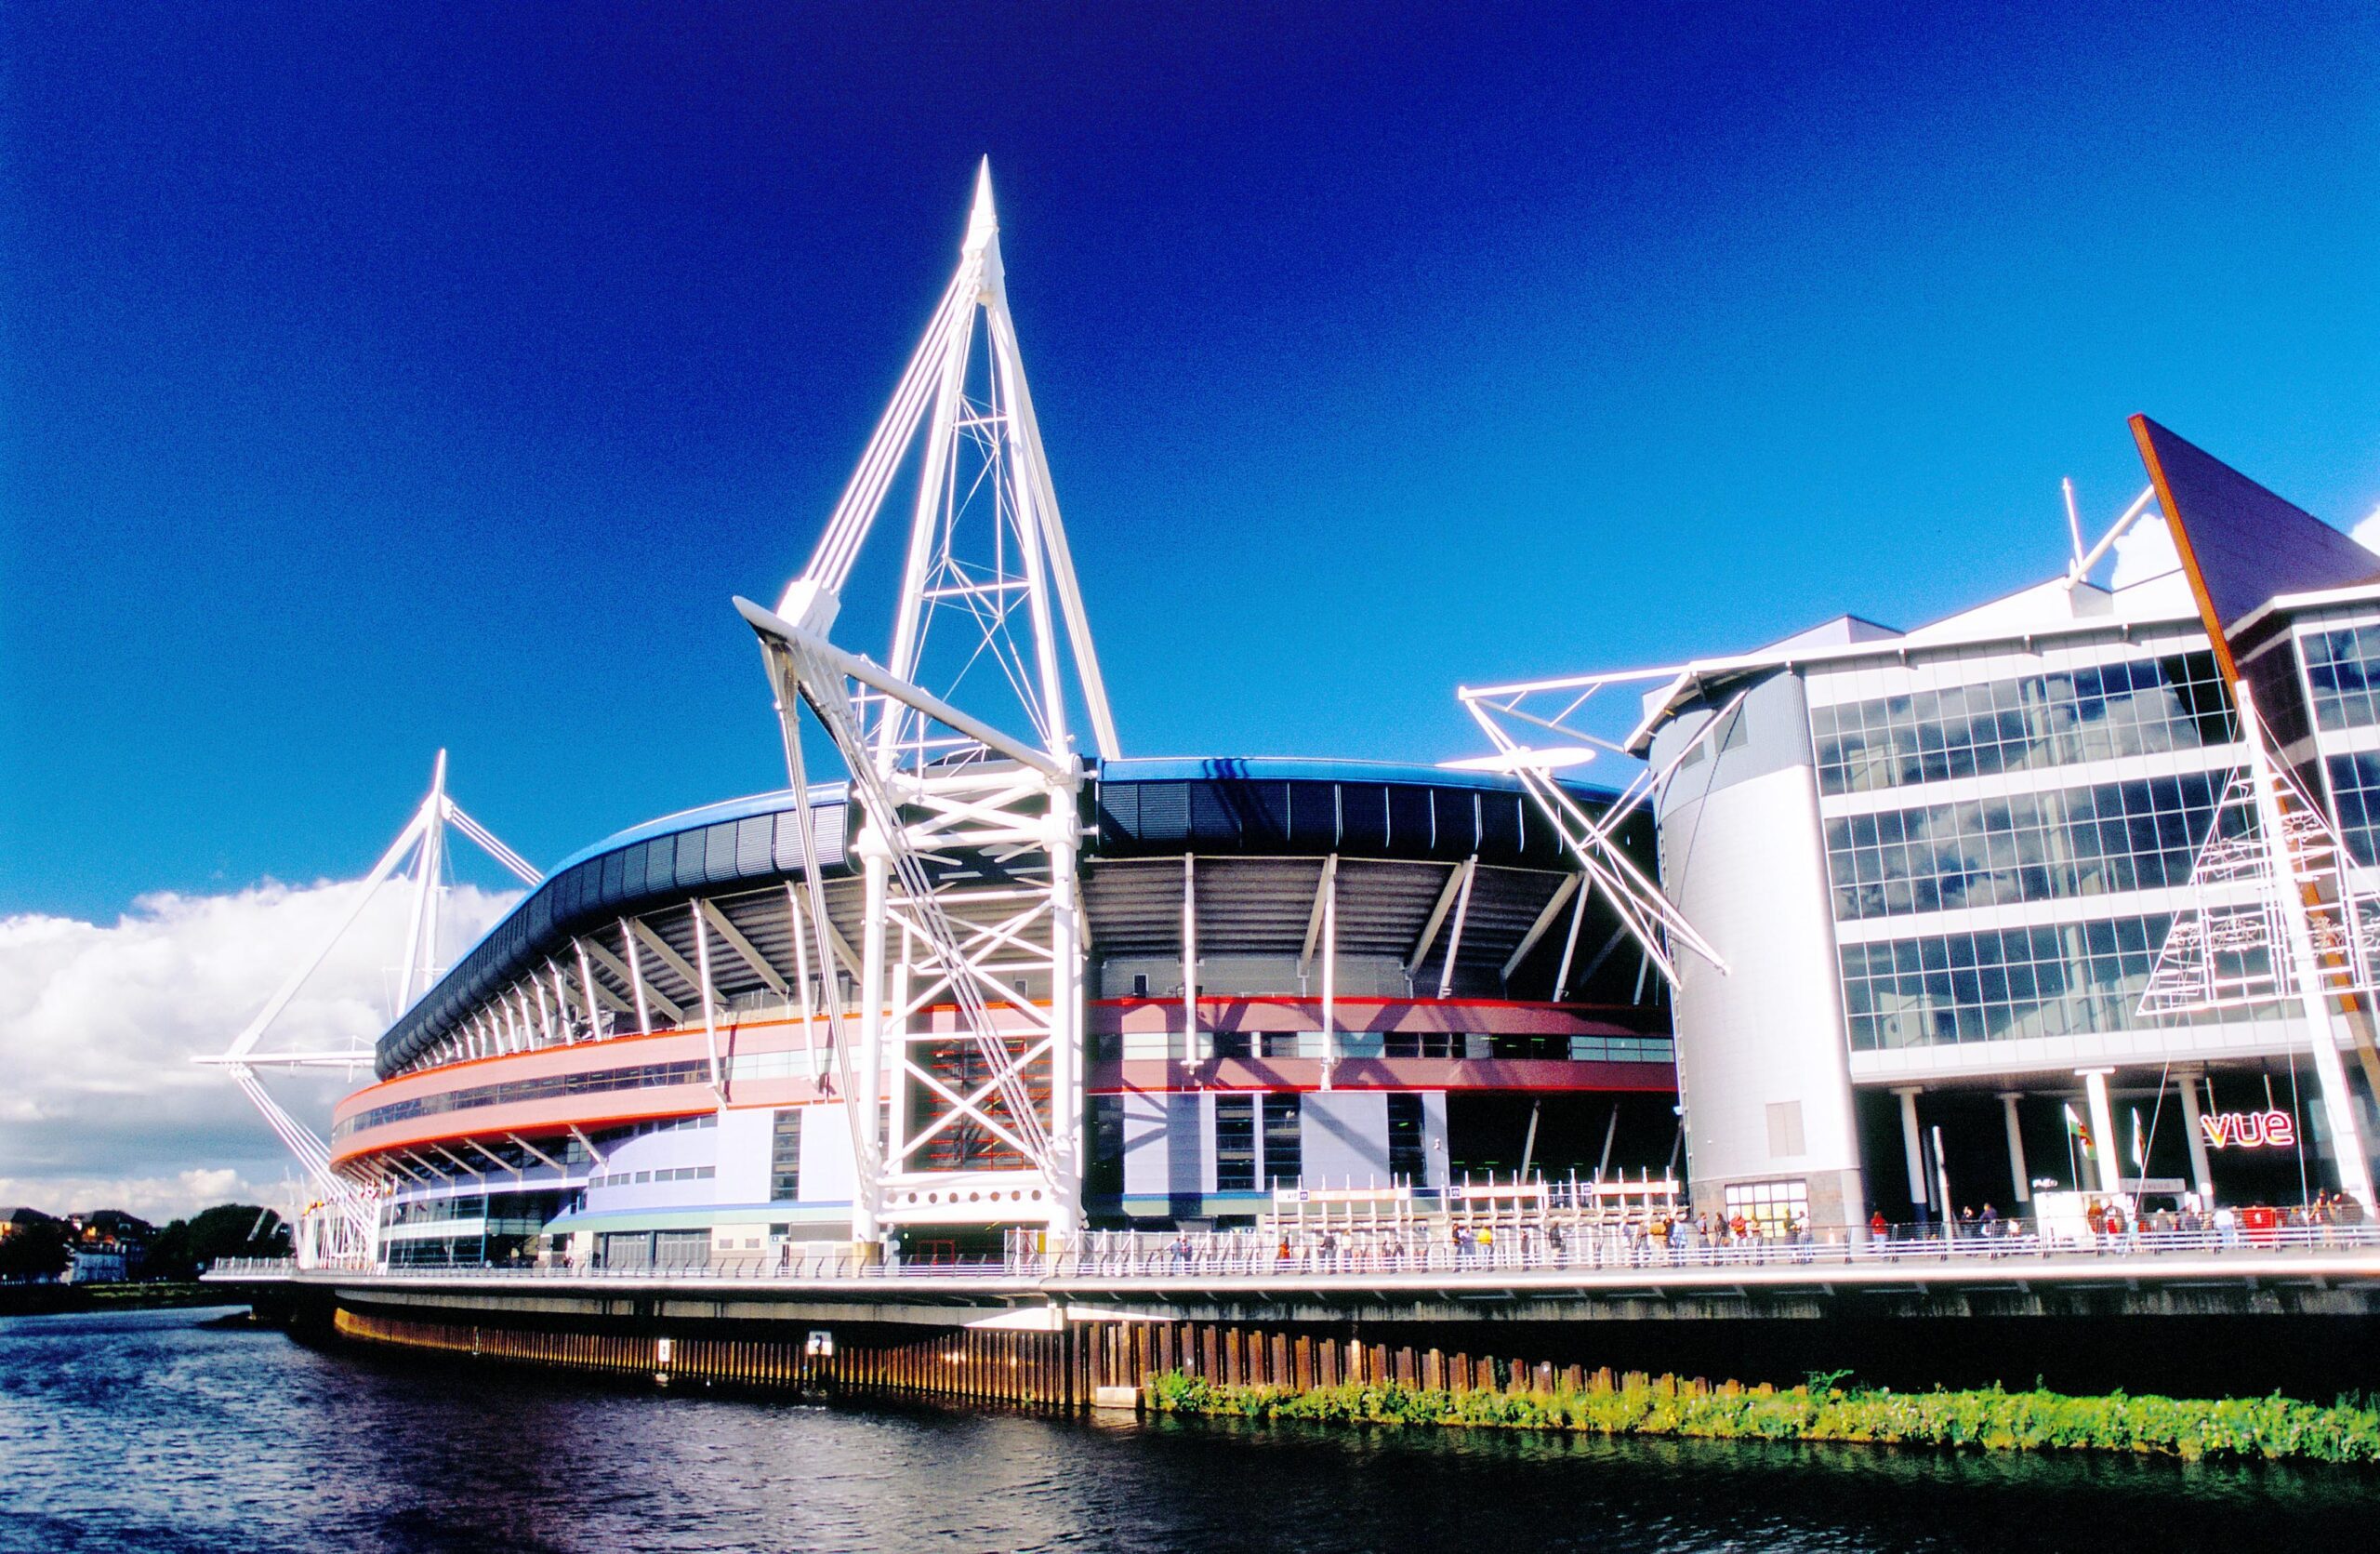 Hotel in Cardiff near the Millennium Stadium